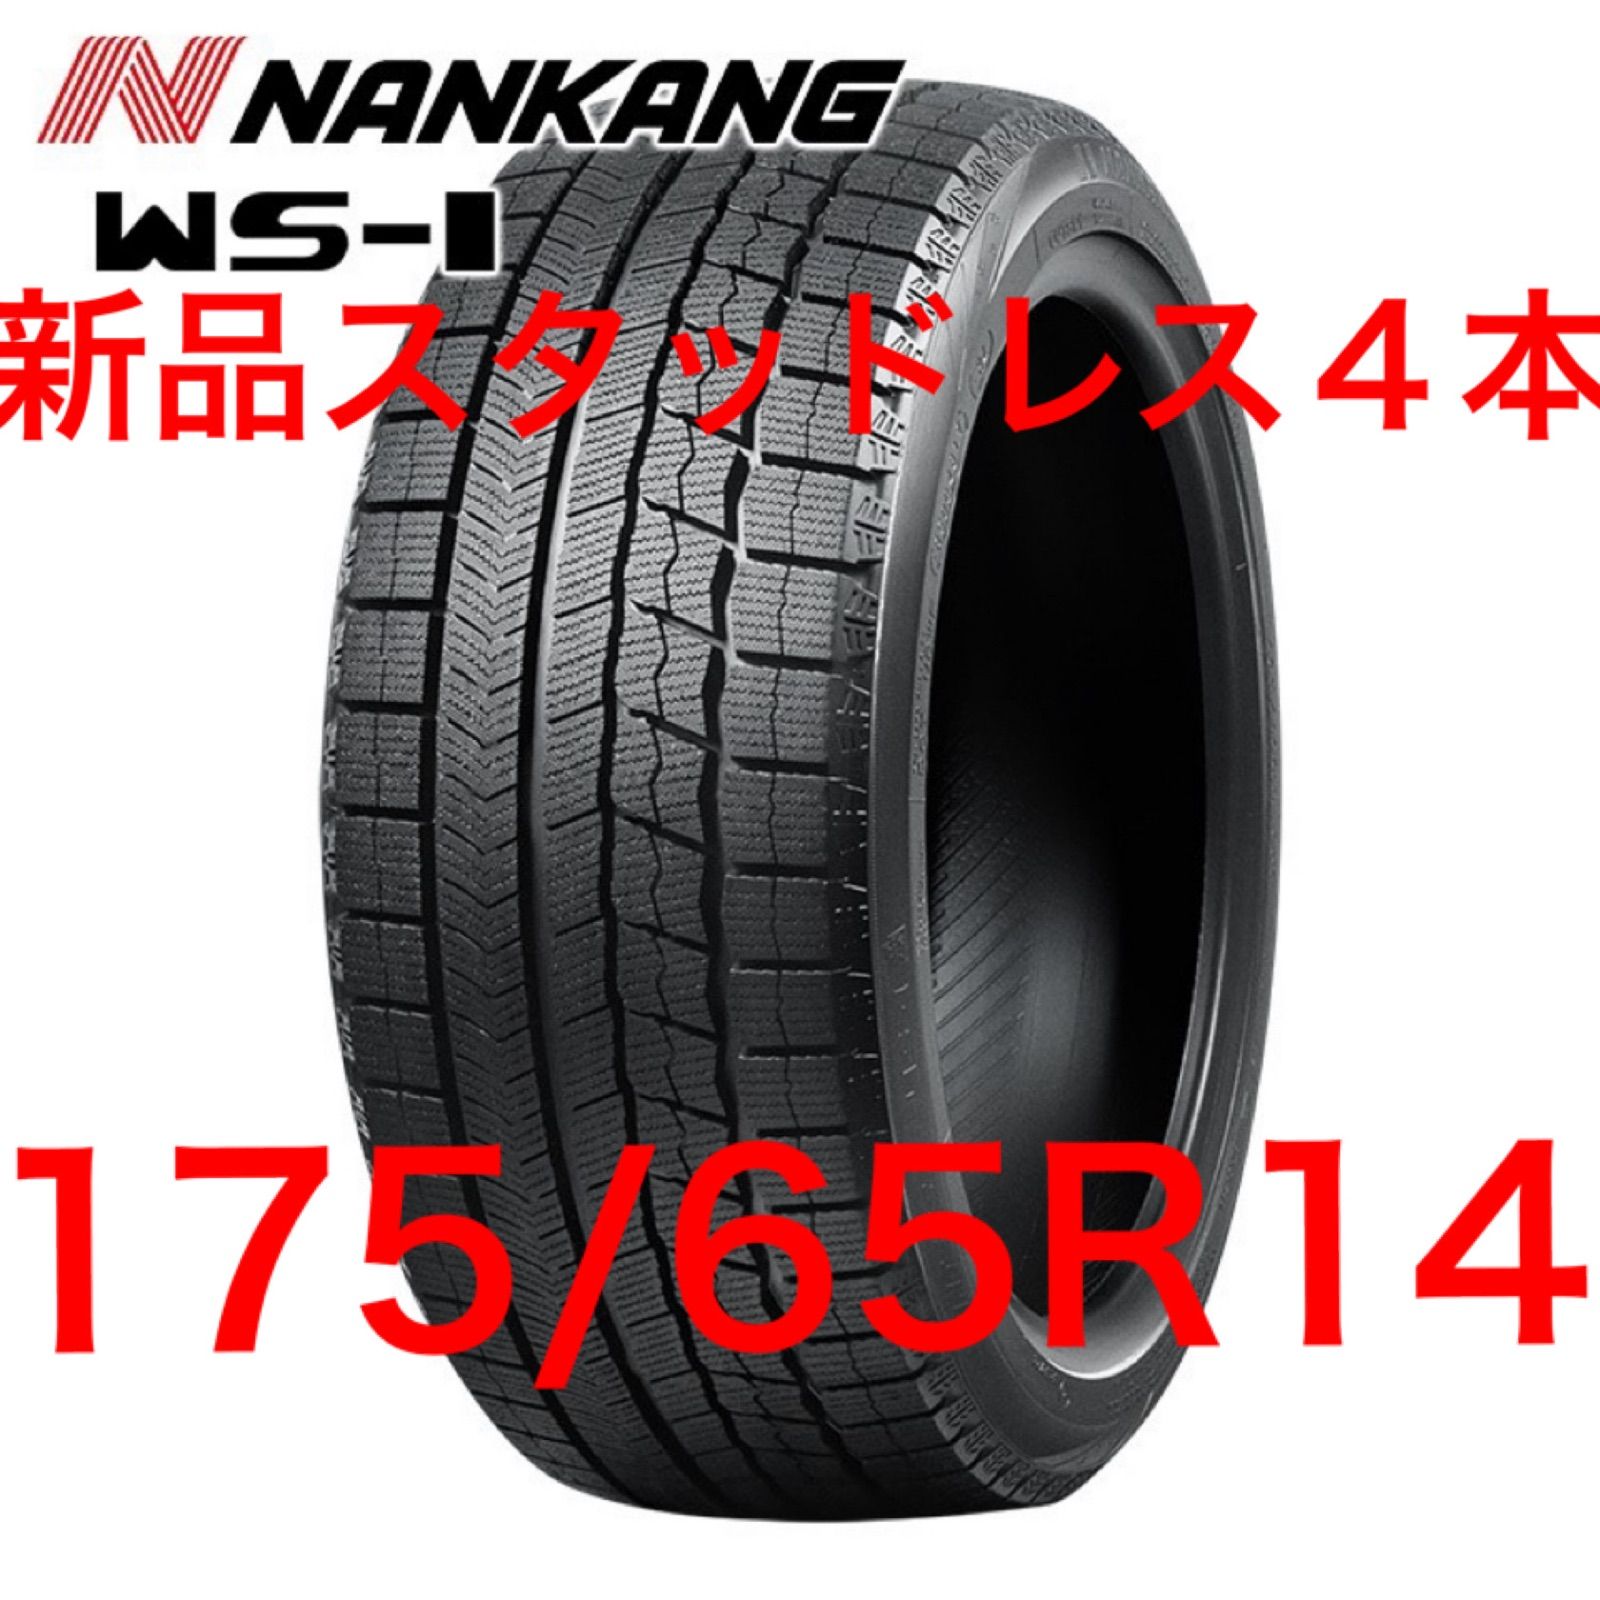 新品22年製 NANKANG ナンカン WS-1 175/65R14 82Q - タイヤショップ